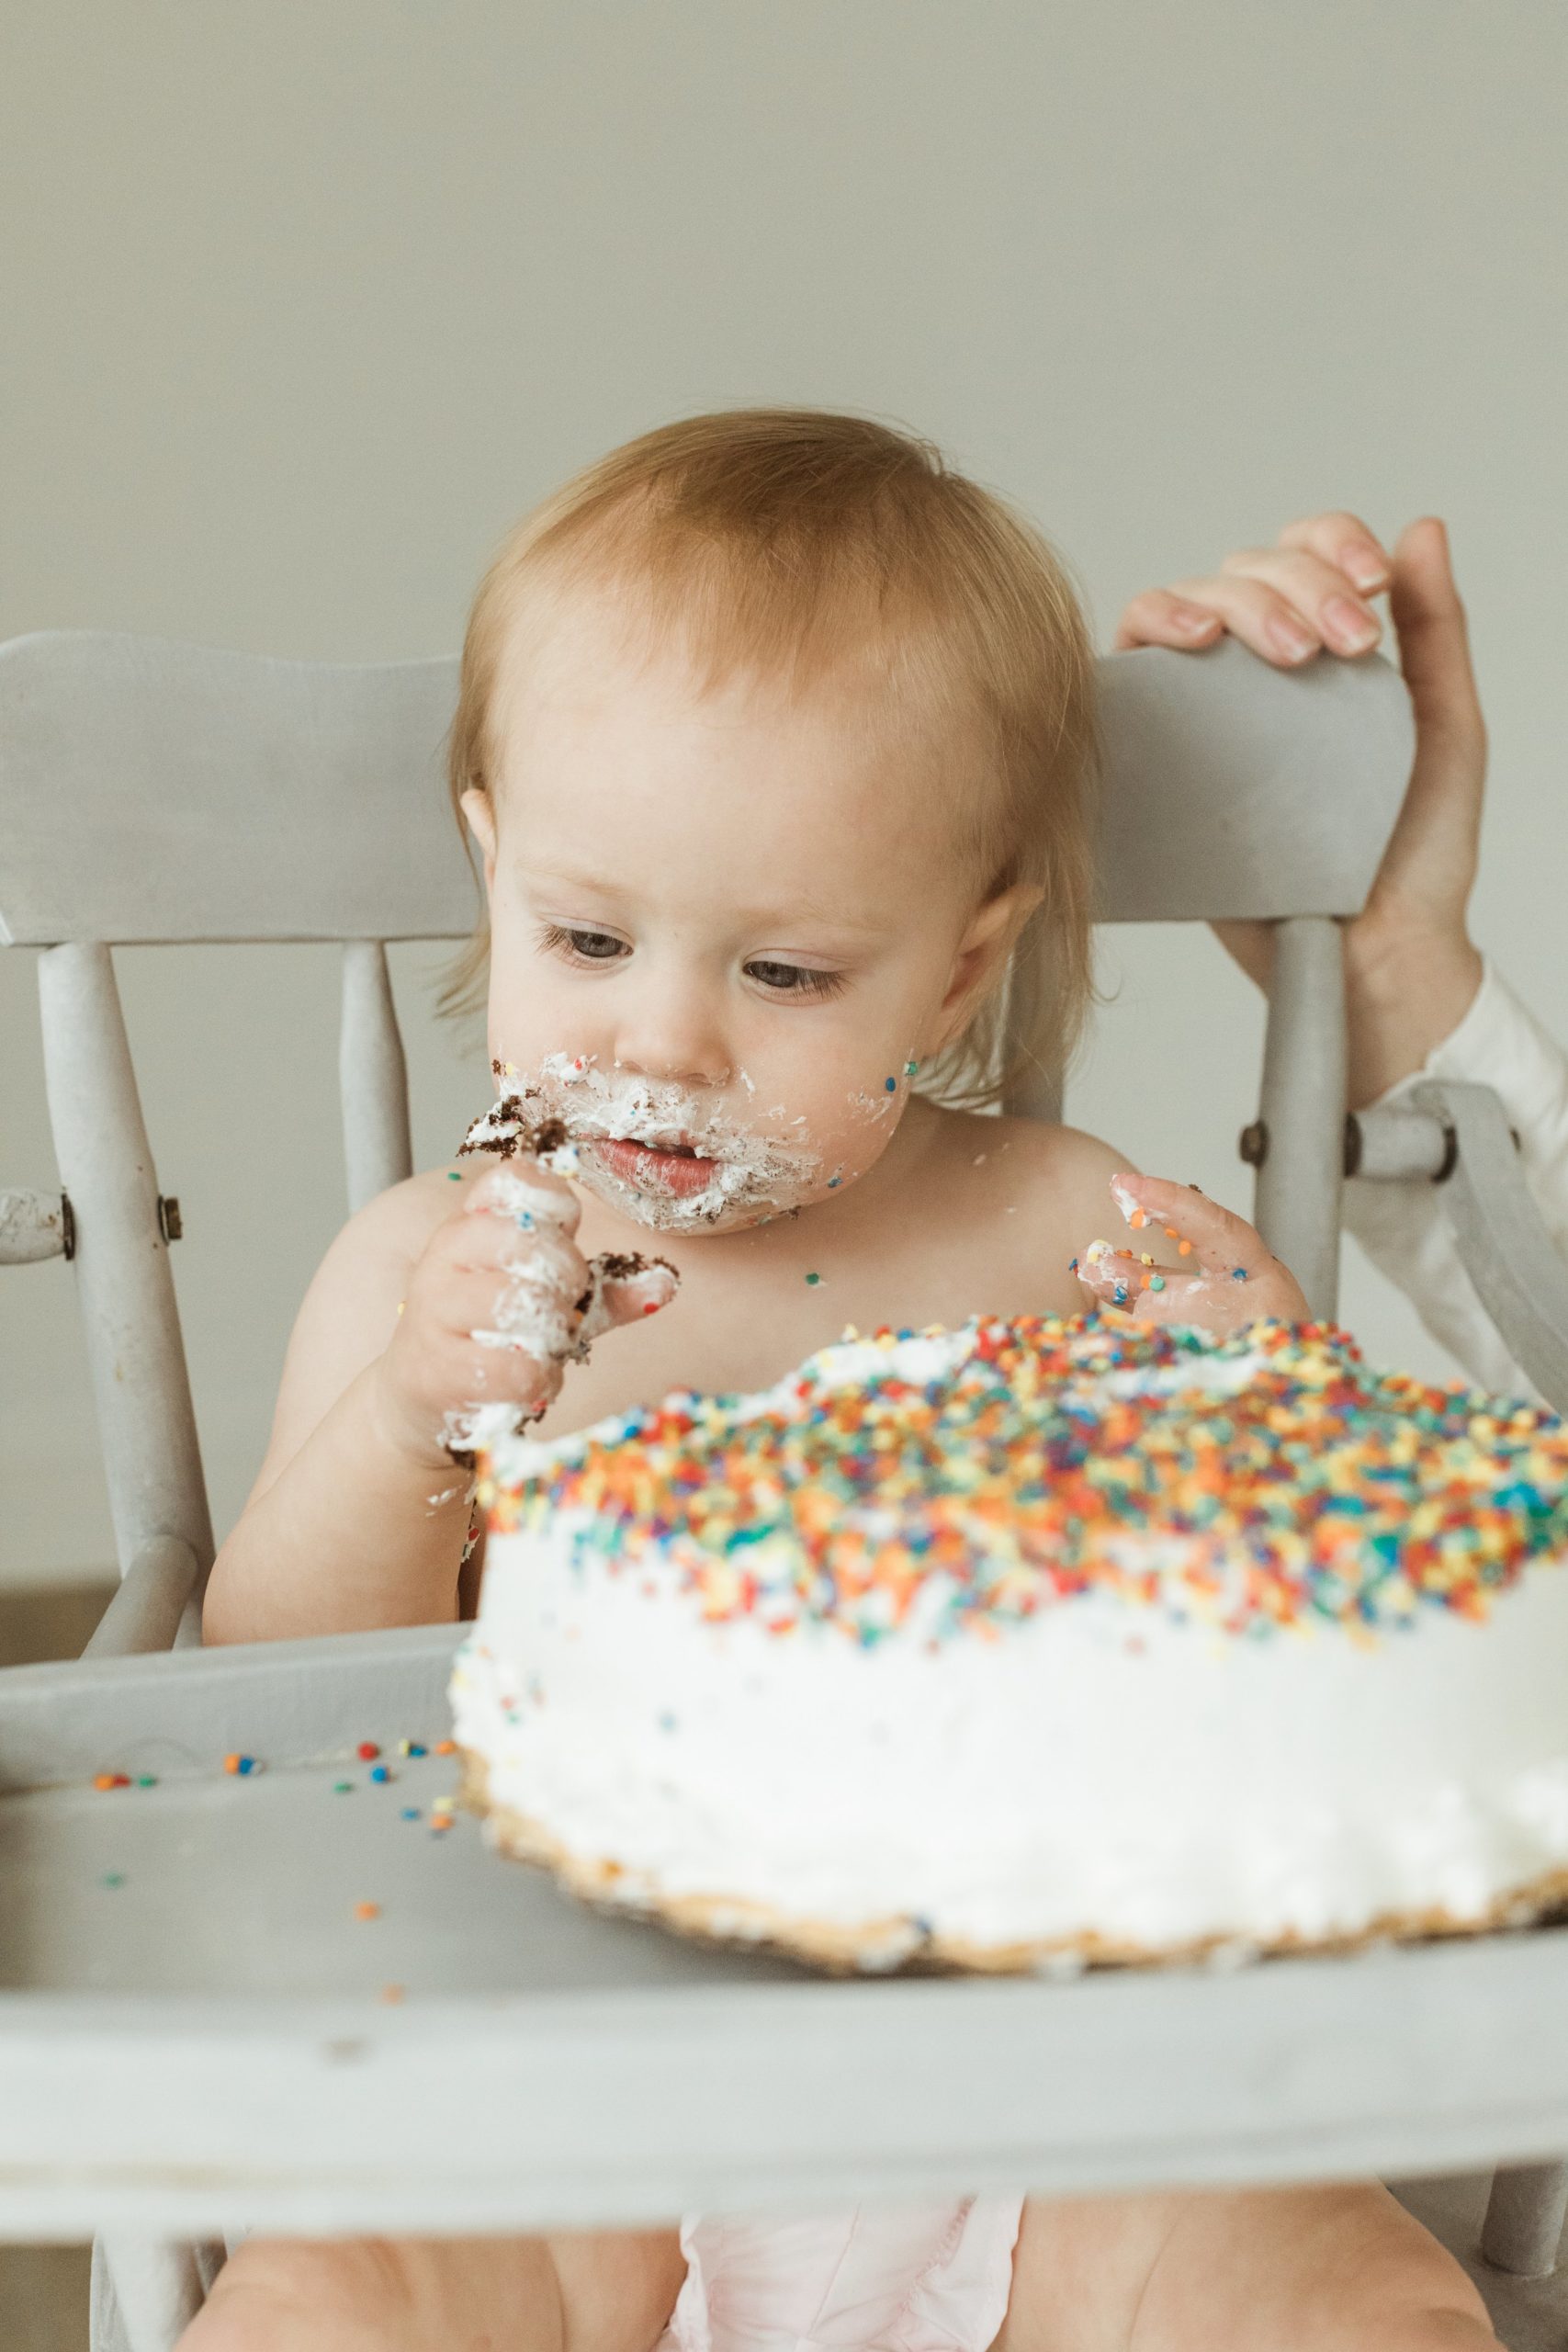 Cake Smash &amp; Kitchen Sink Session | Isla's 1st Birthday